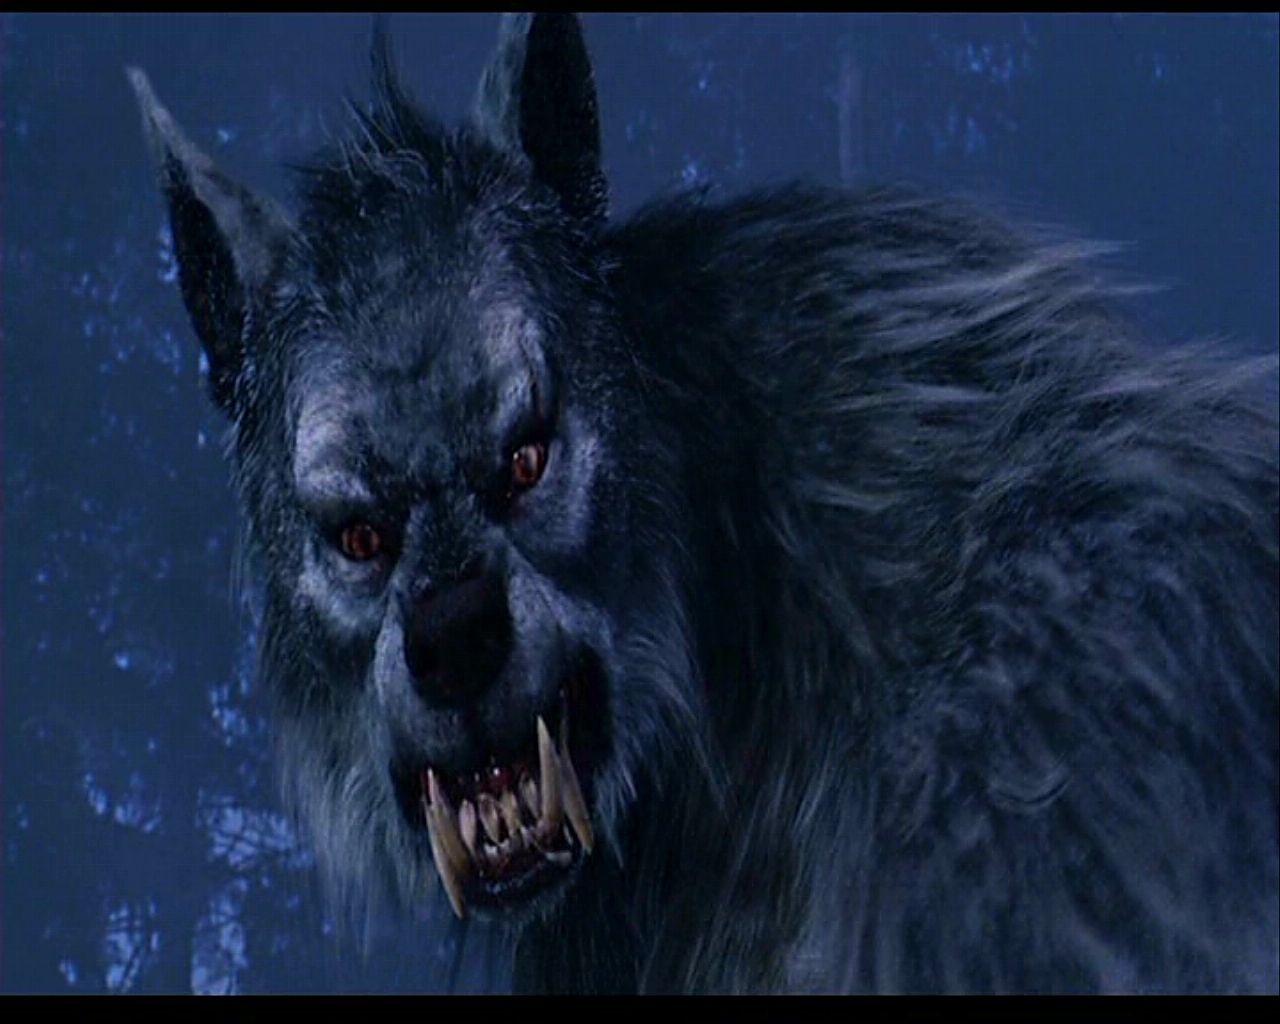 Van Helsing Werewolf Wallpapers - WallpaperSafari